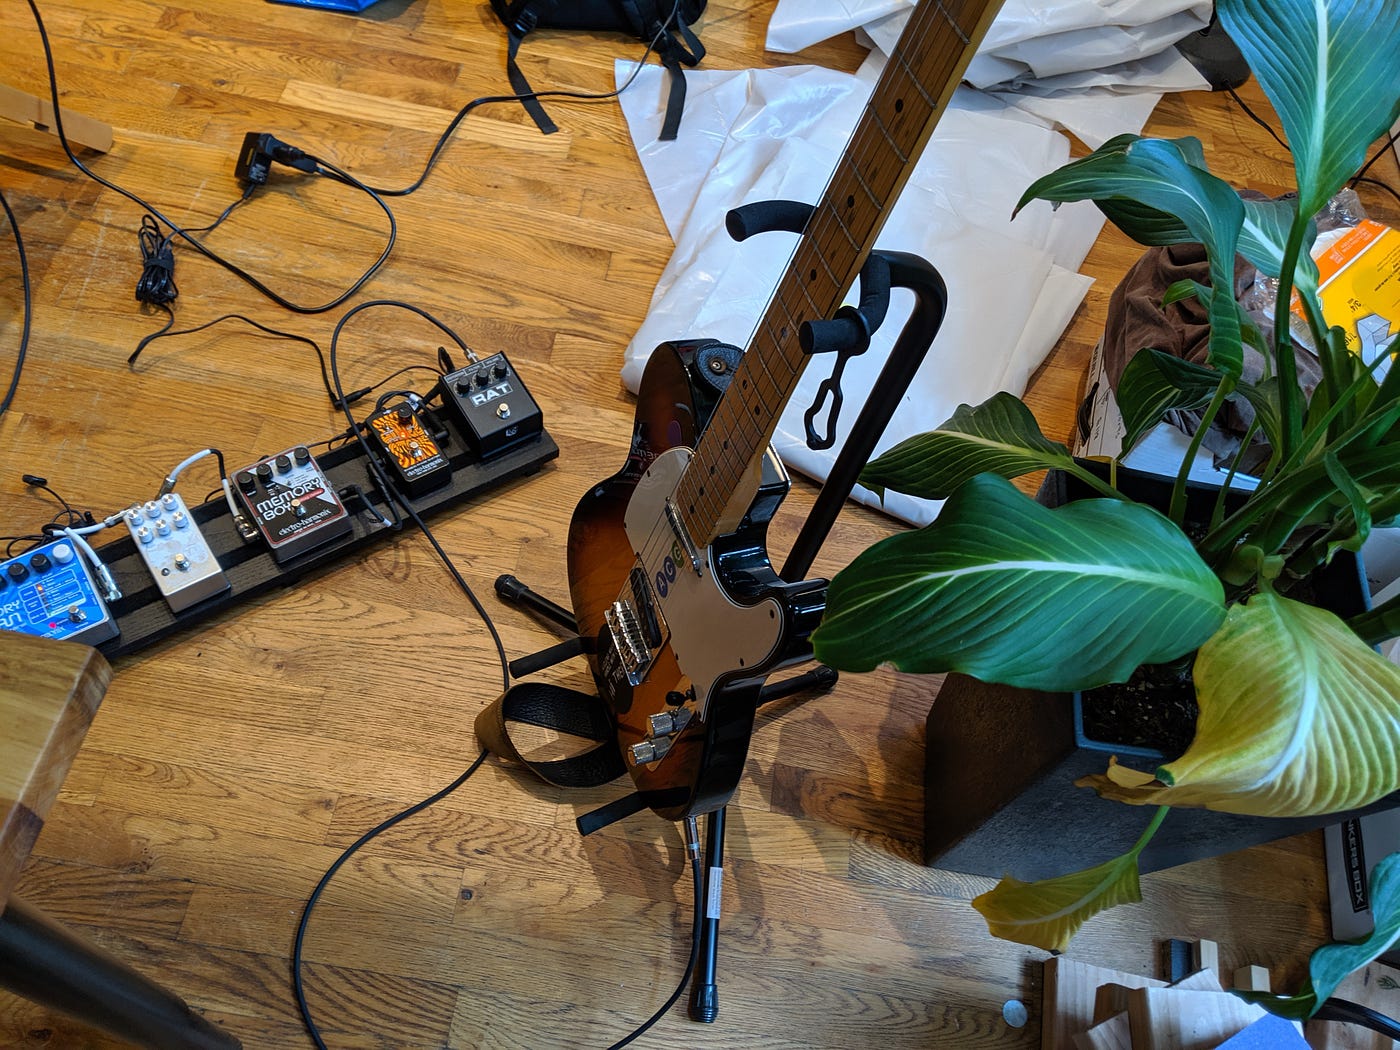 Reckoner+=Matthew live setup, circa June 2019